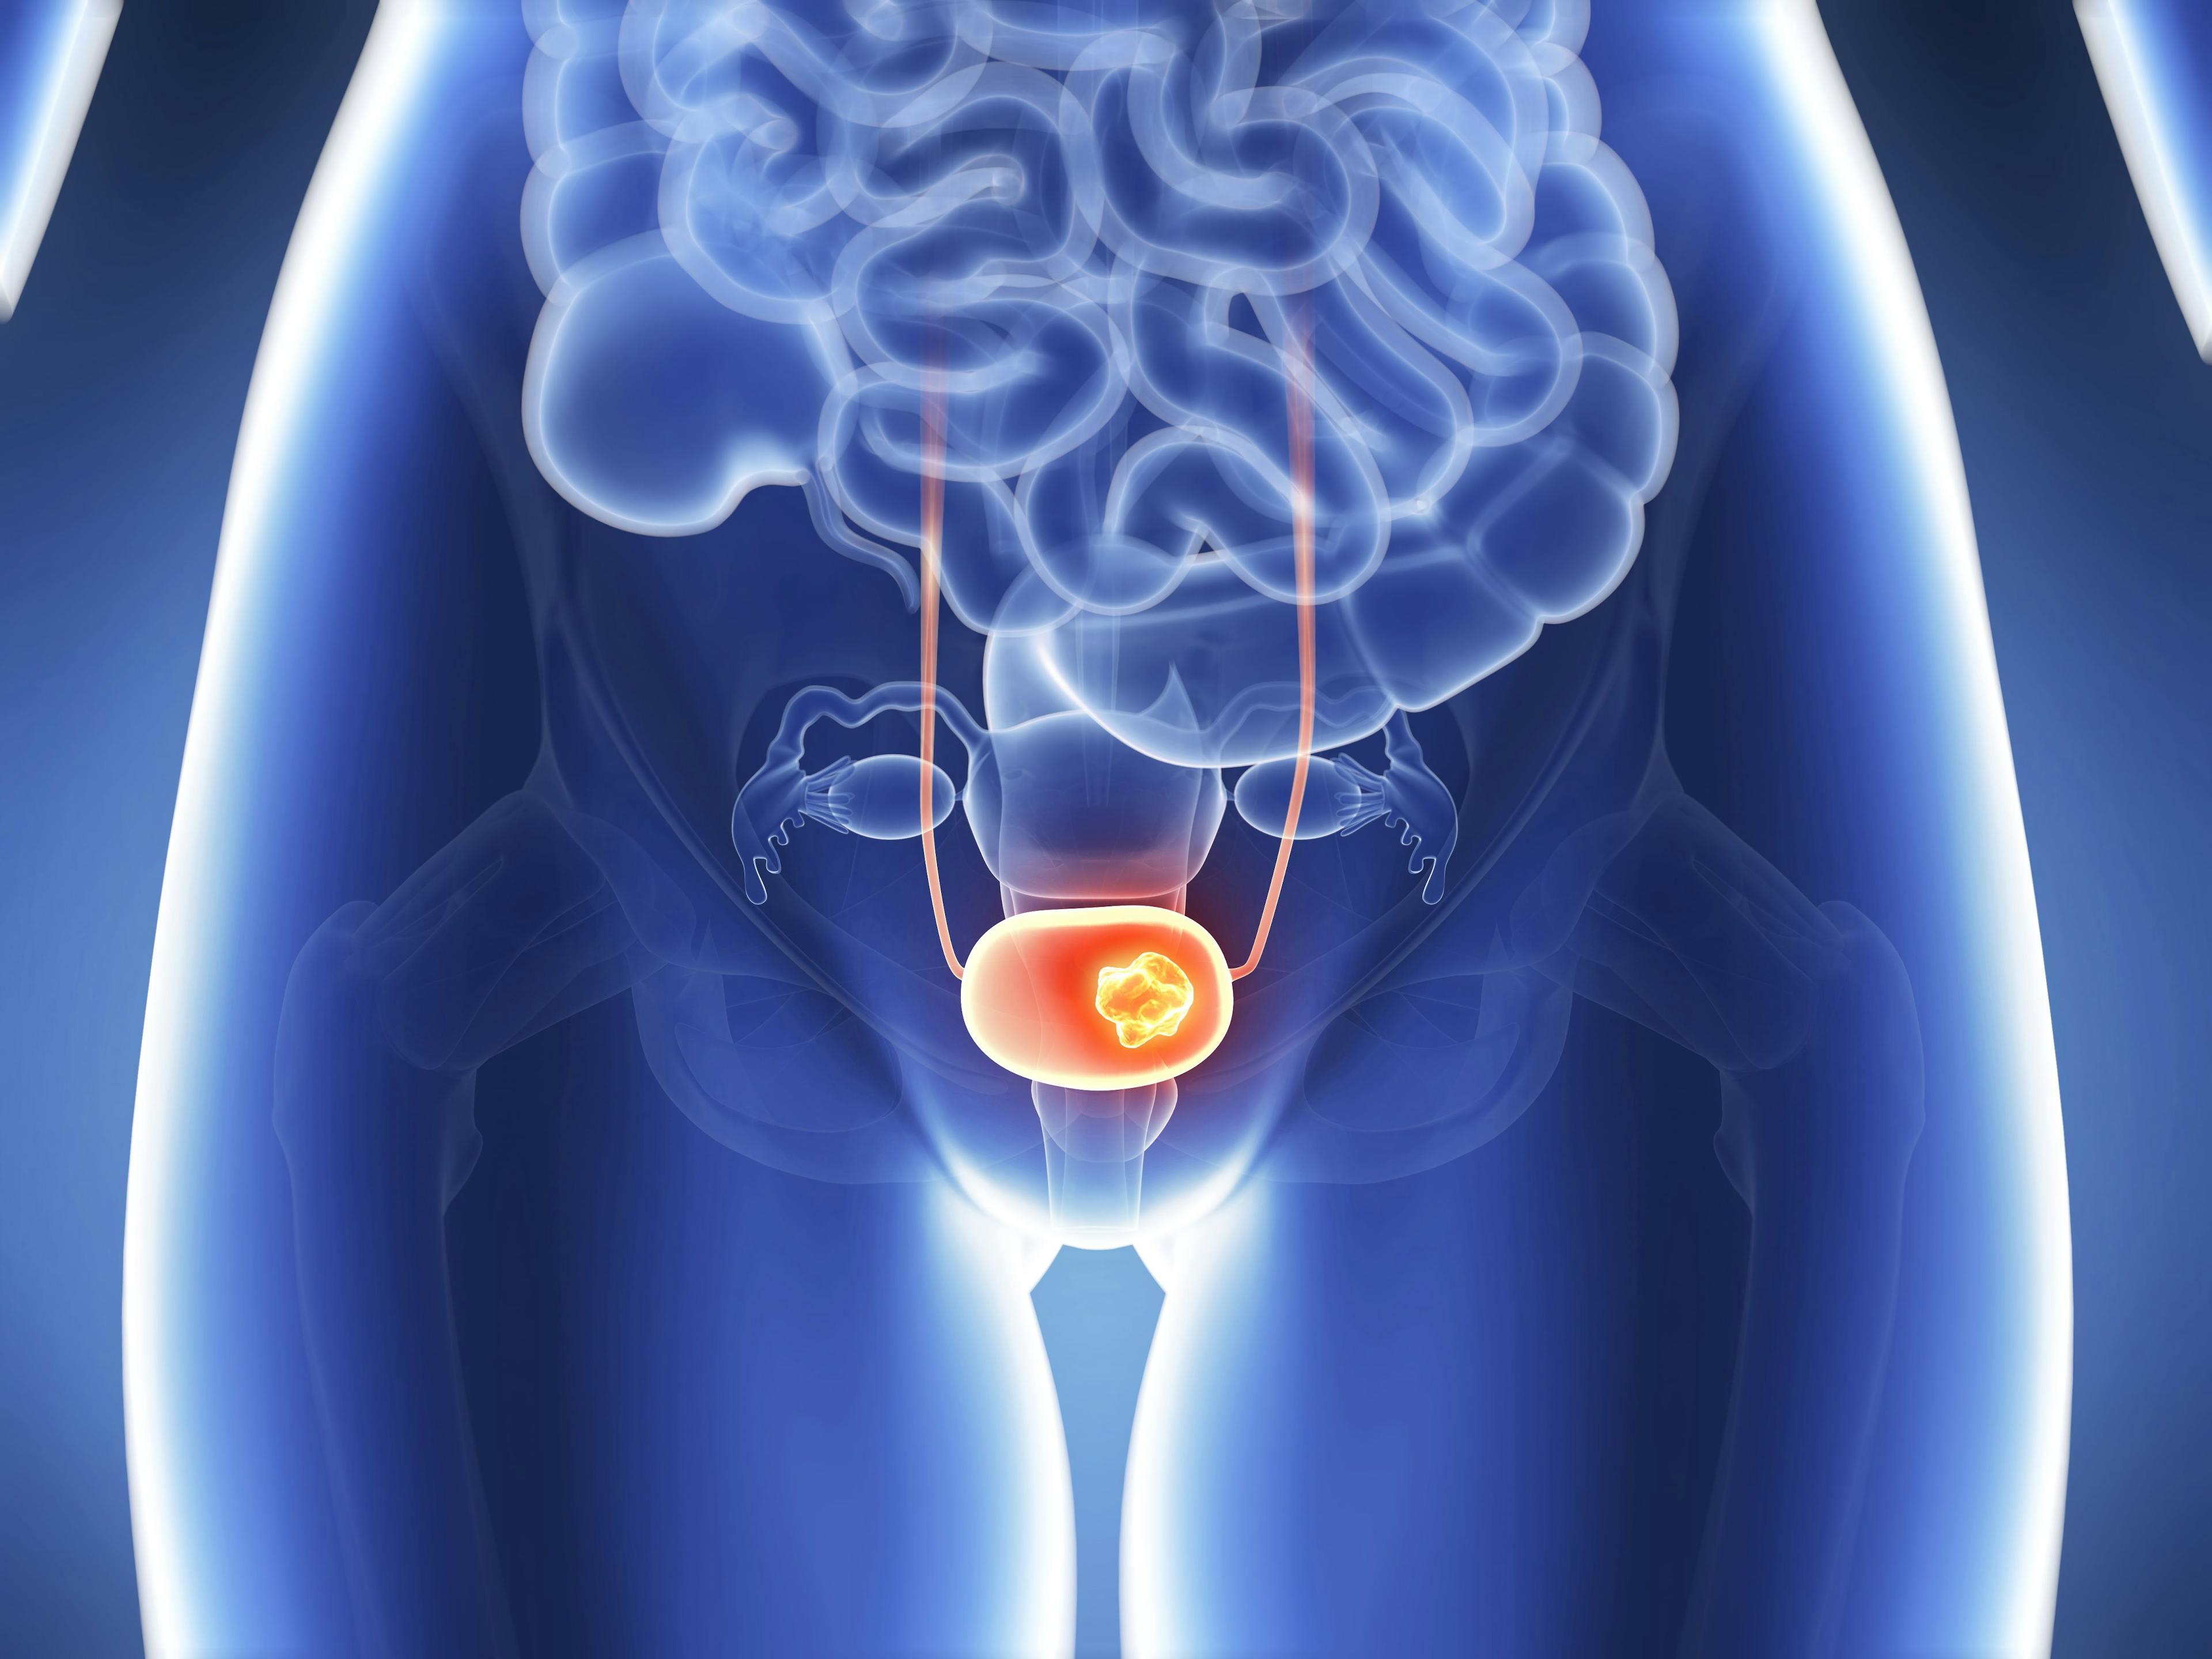 3d rendered illustration - bladder cancer | Image Credit: SciePro - www.stock.adobe.com